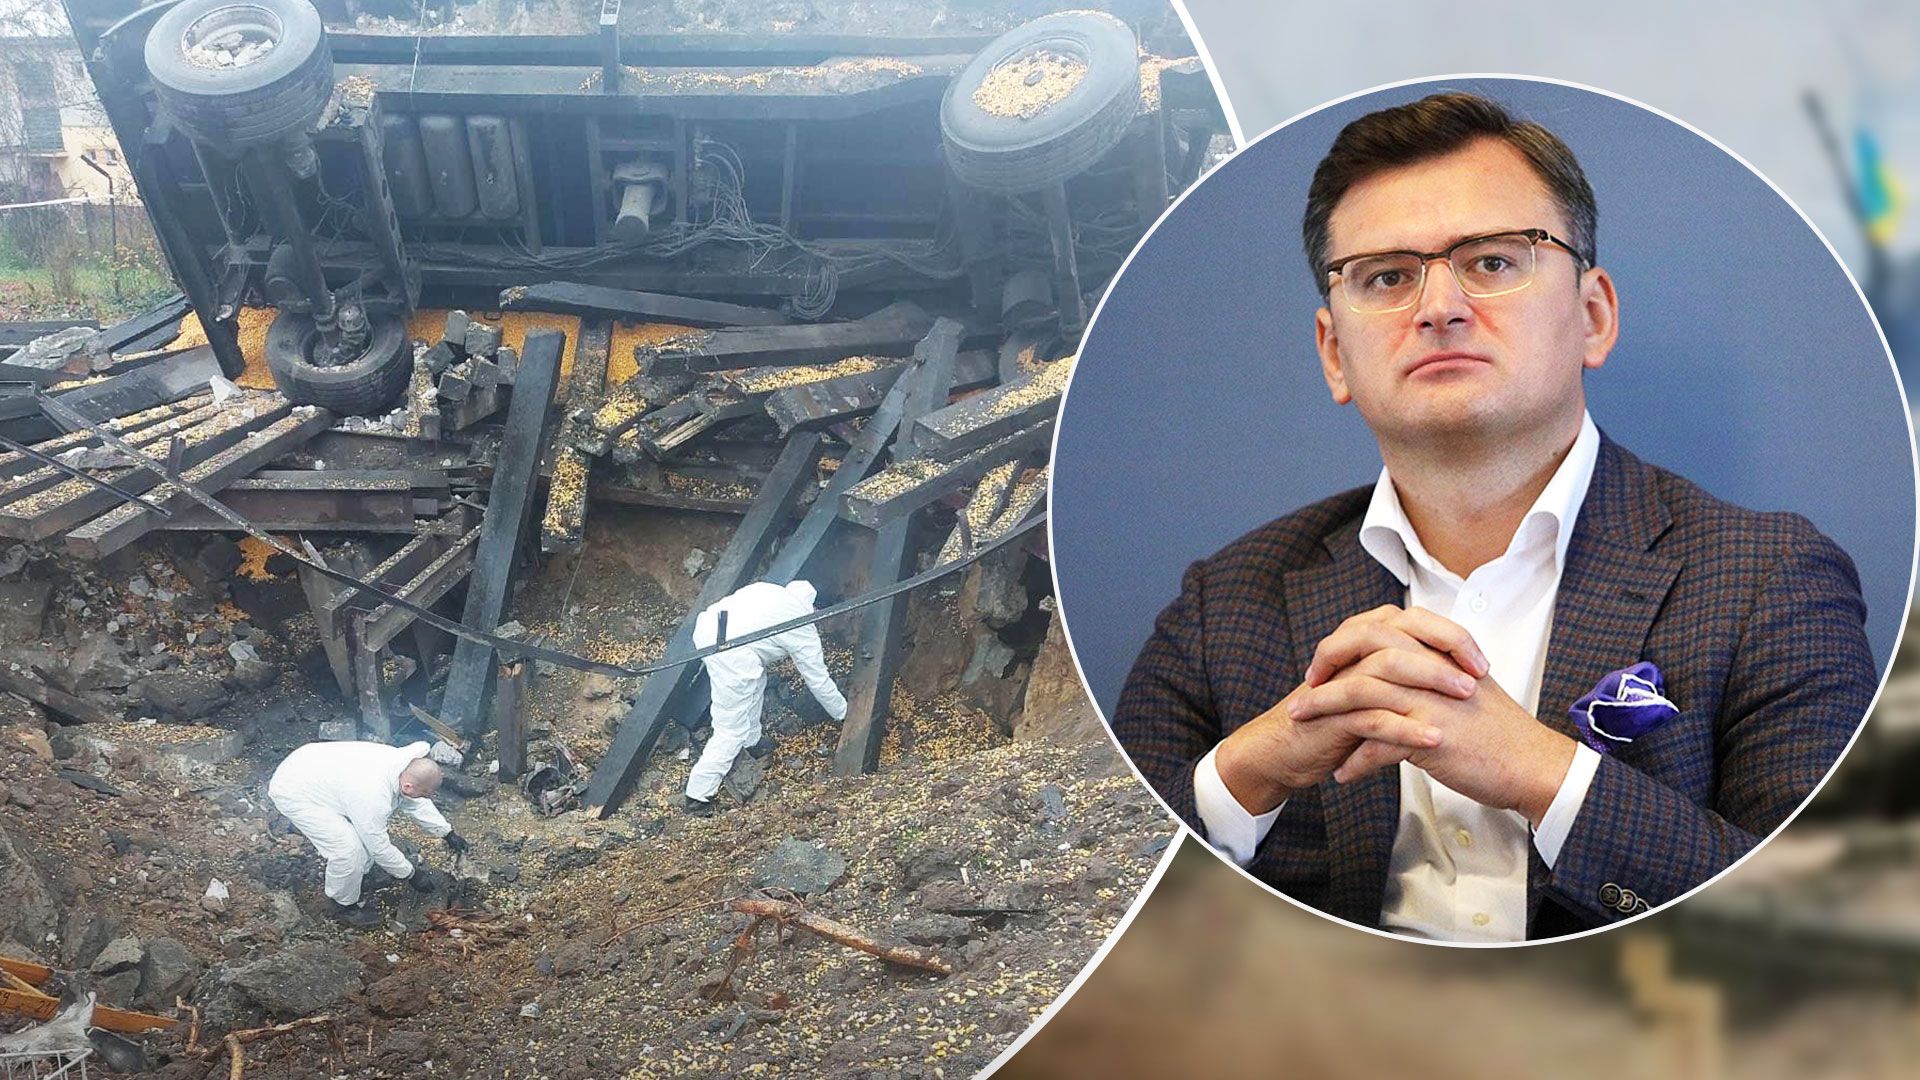 Украинских экспертов допустили расследовать падение ракеты в Польше - Новости Украины - 24 Канал